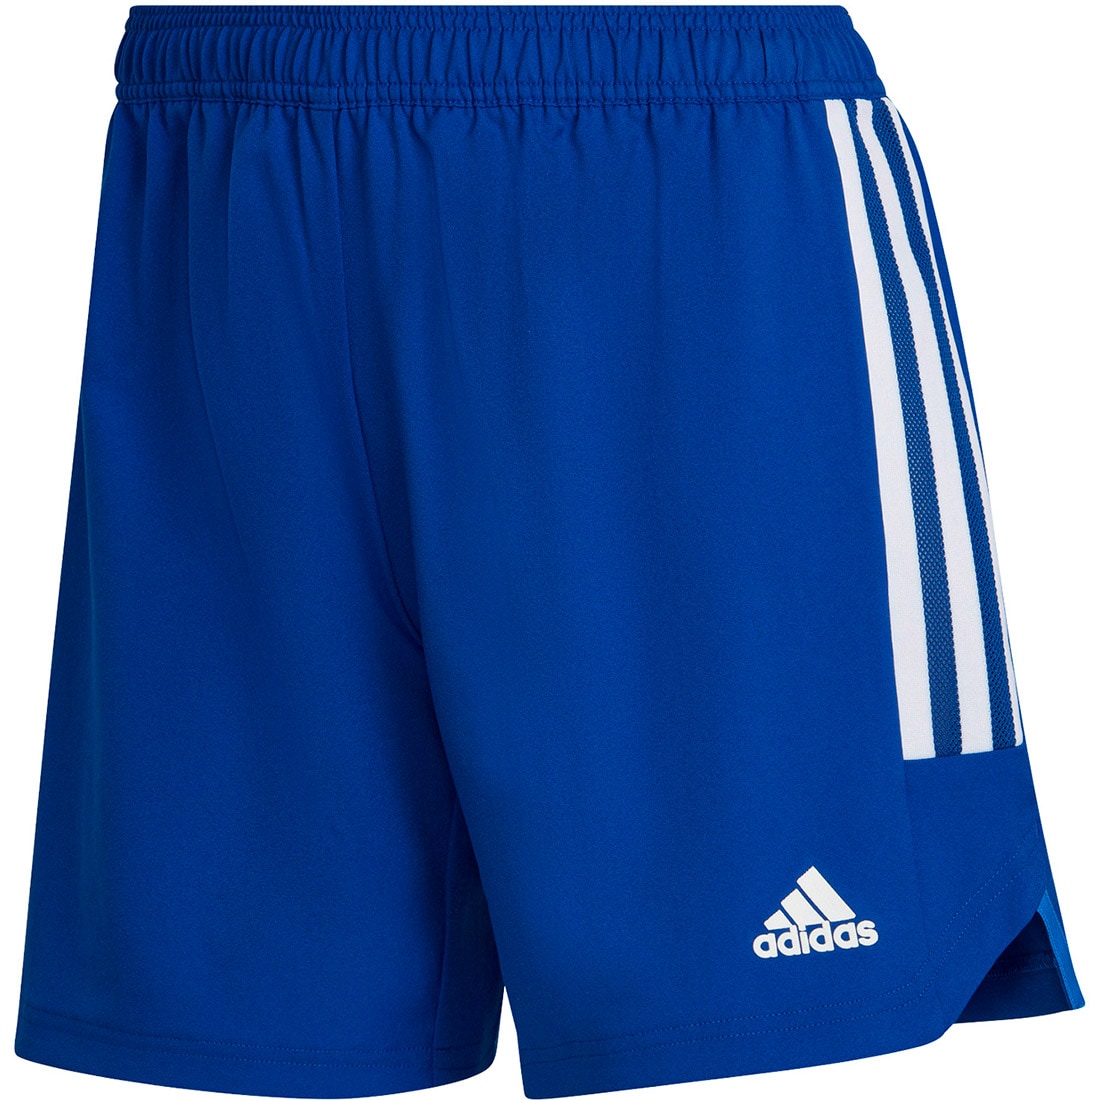 Adidas Damen MD Shorts Condivo 22 blau-weiß